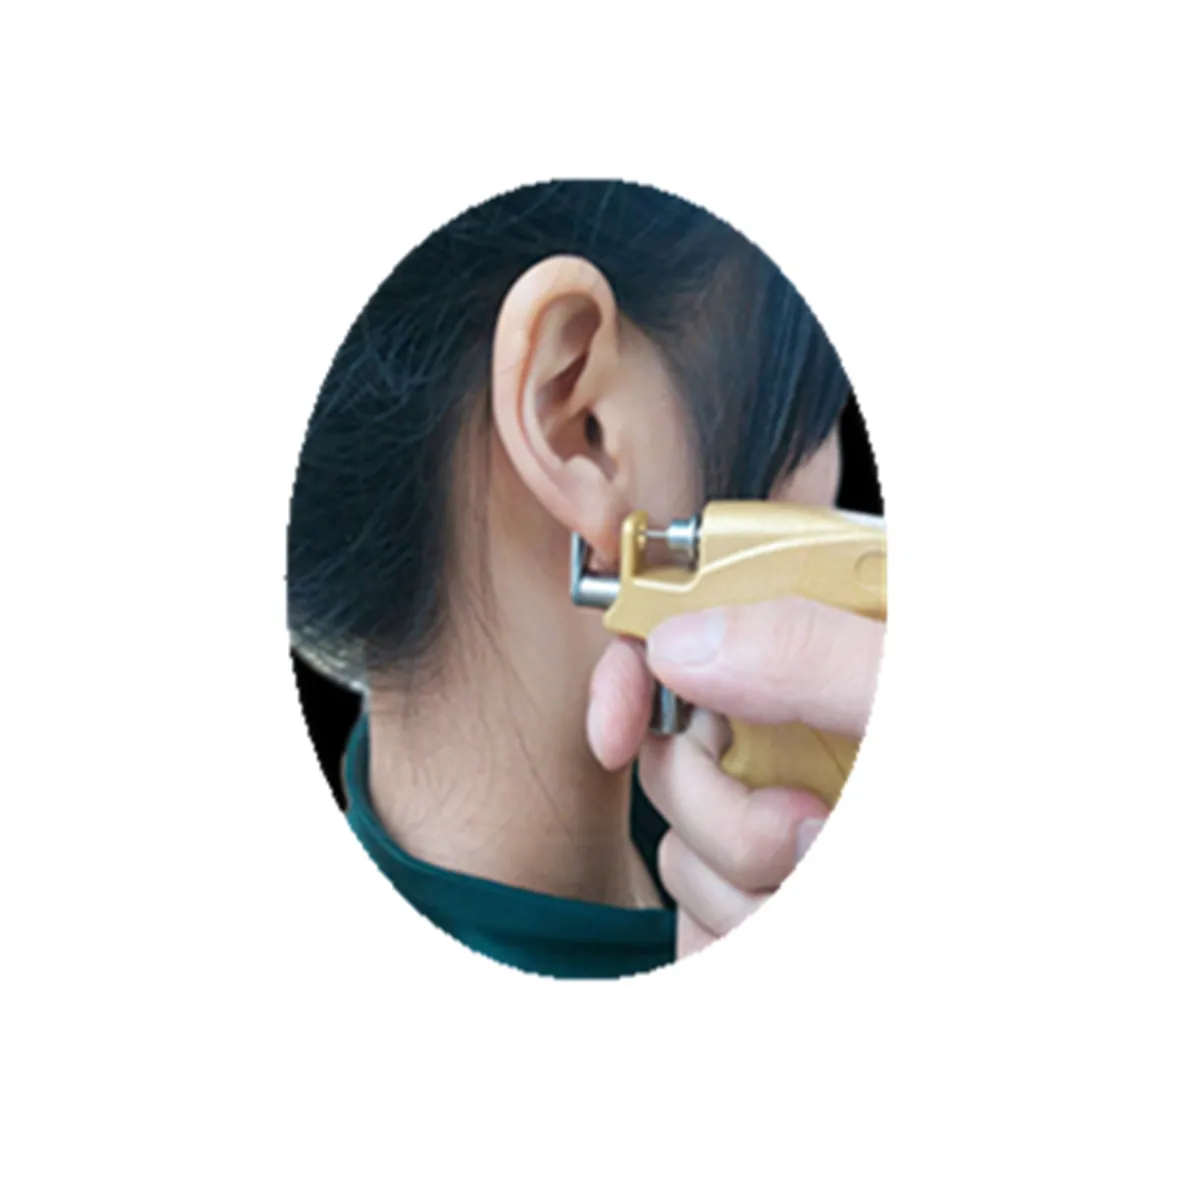 3 мм/4 мм/5 мм Профессиональный ухо серьга-гвоздик для пирсинга машина набор инструментов для пирсинга шпильки комплект